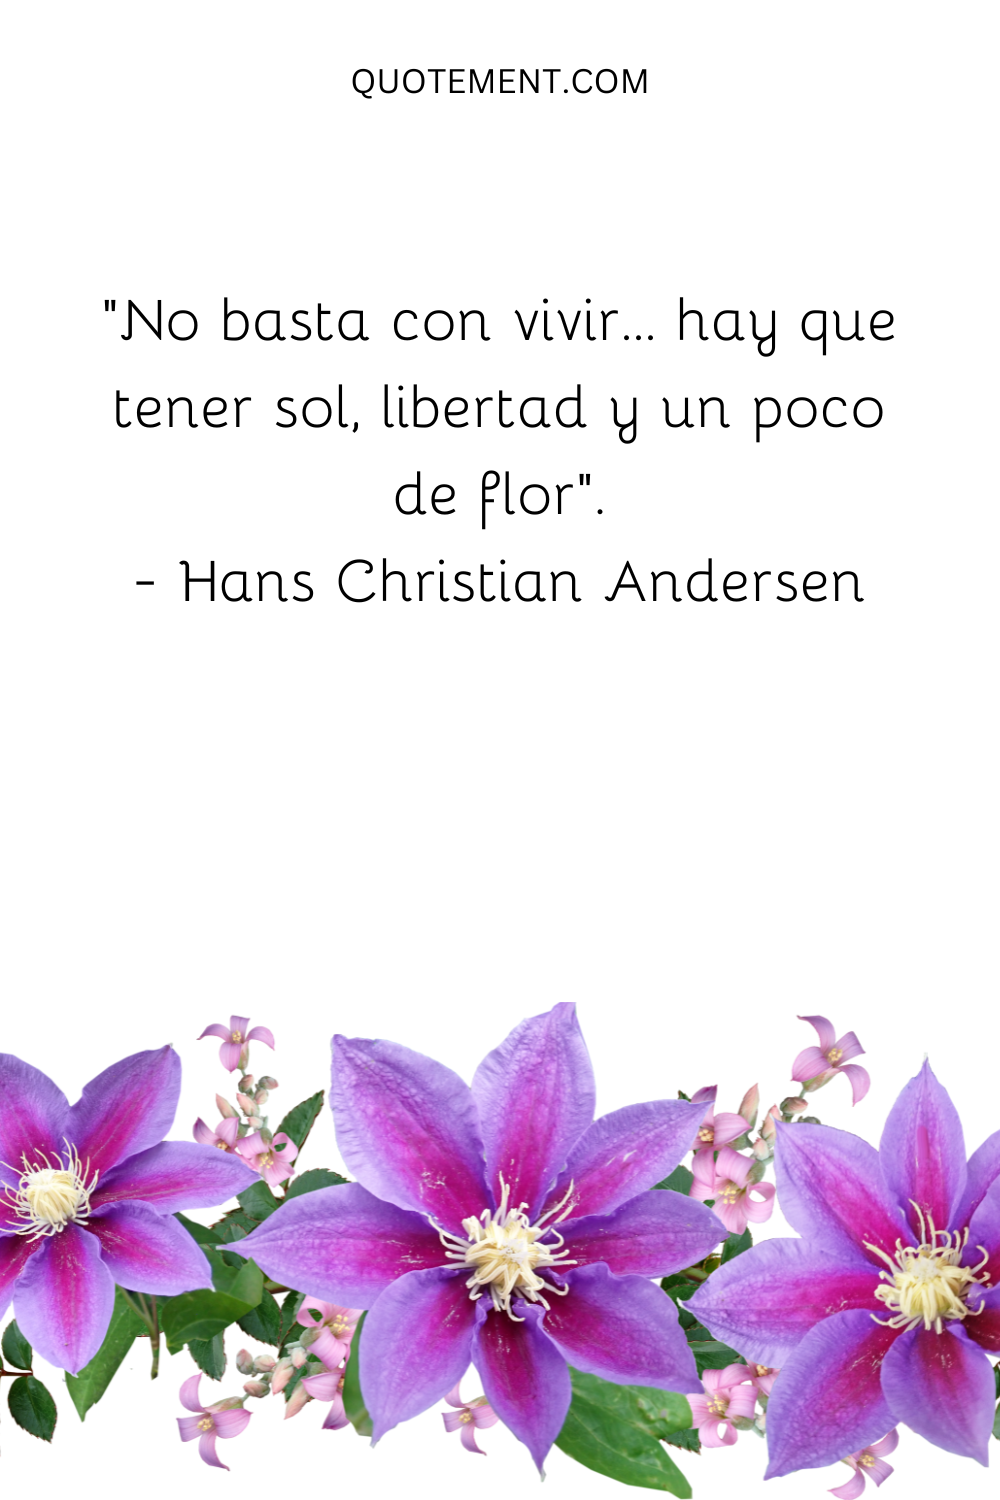 "No basta con vivir... hay que tener sol, libertad y una florecita". - Hans Christian Andersen